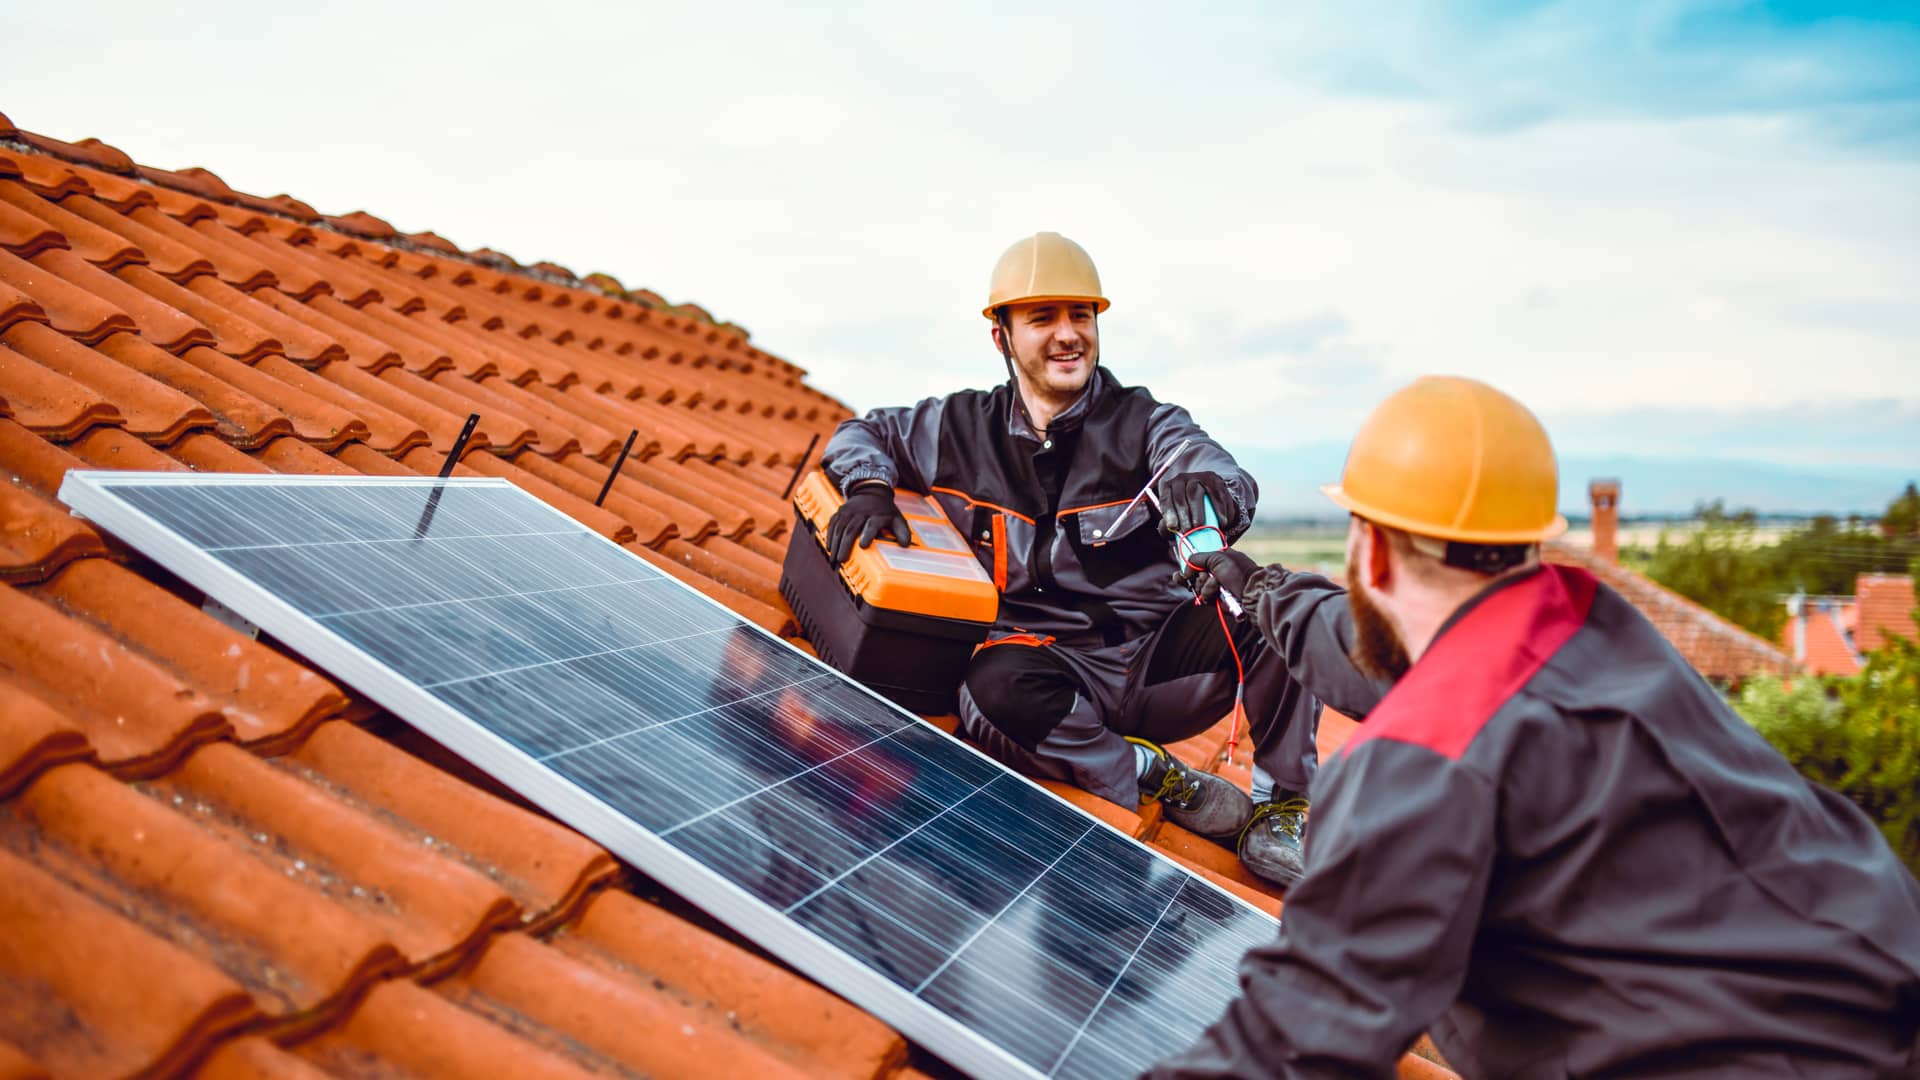 Técnicos de edp instalando placas solares de energía renovable en una casa